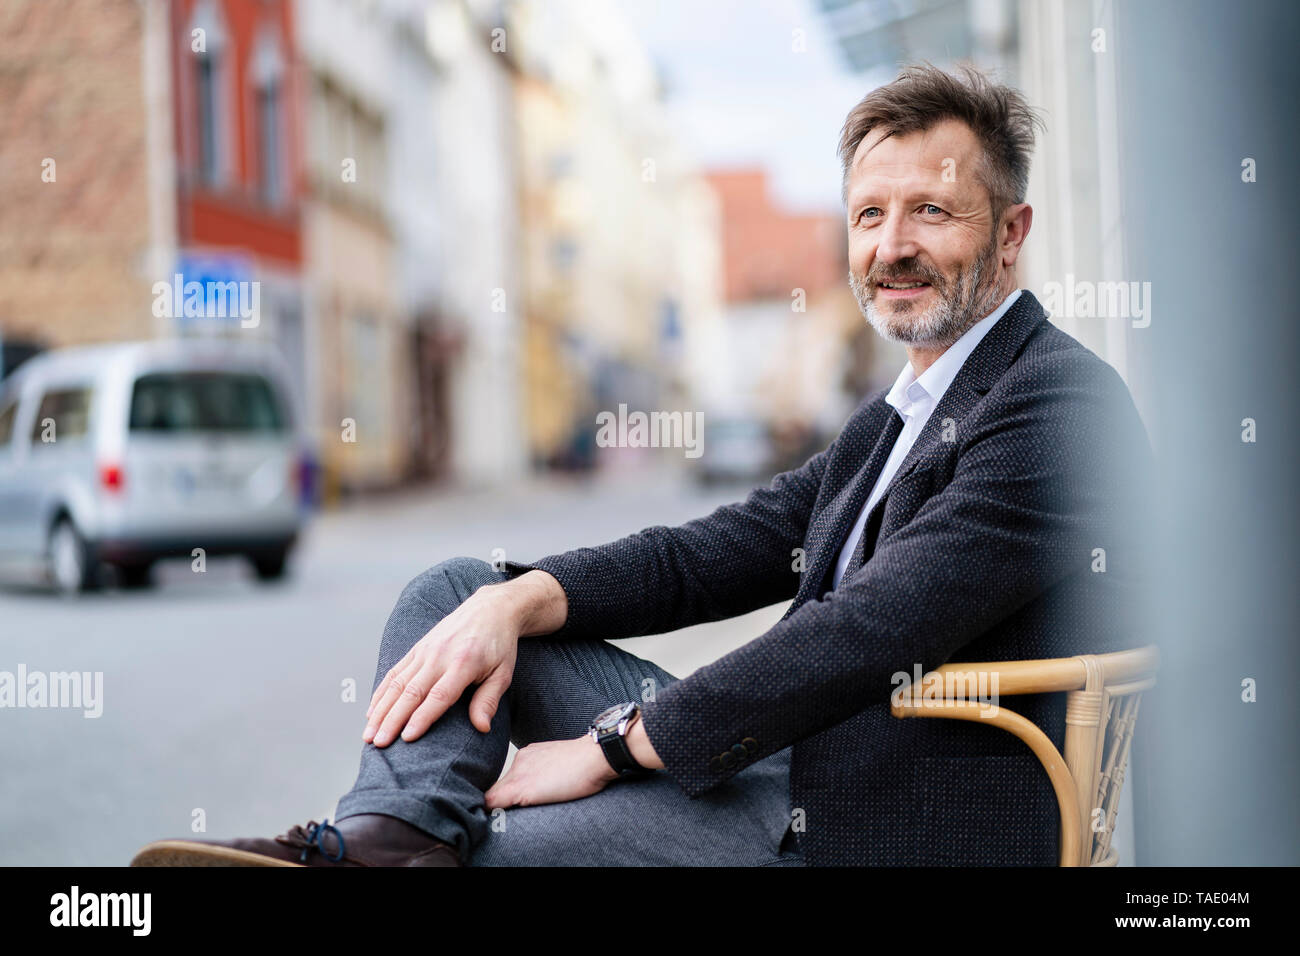 Portrait de contenu mature businessman avec barbe grisonnants assis sur une chaise dans la ville Banque D'Images